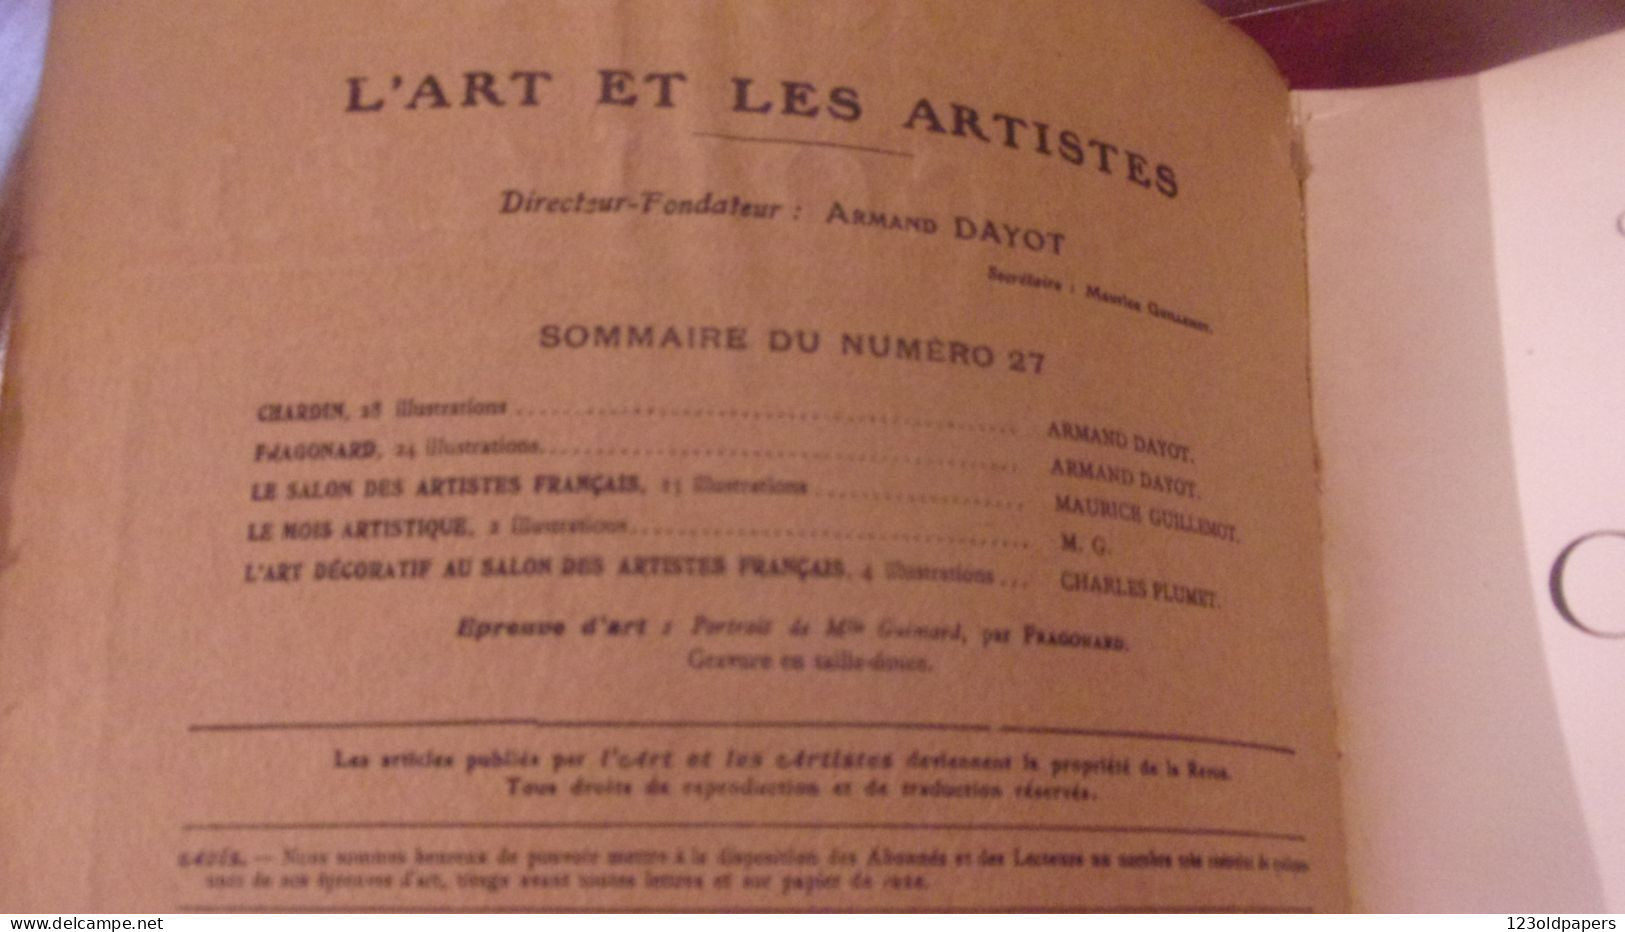 Chardin & Fragonard Numéro Spécial De L'art & Les Artistes N°27 3e Année Juin 1907 - Art